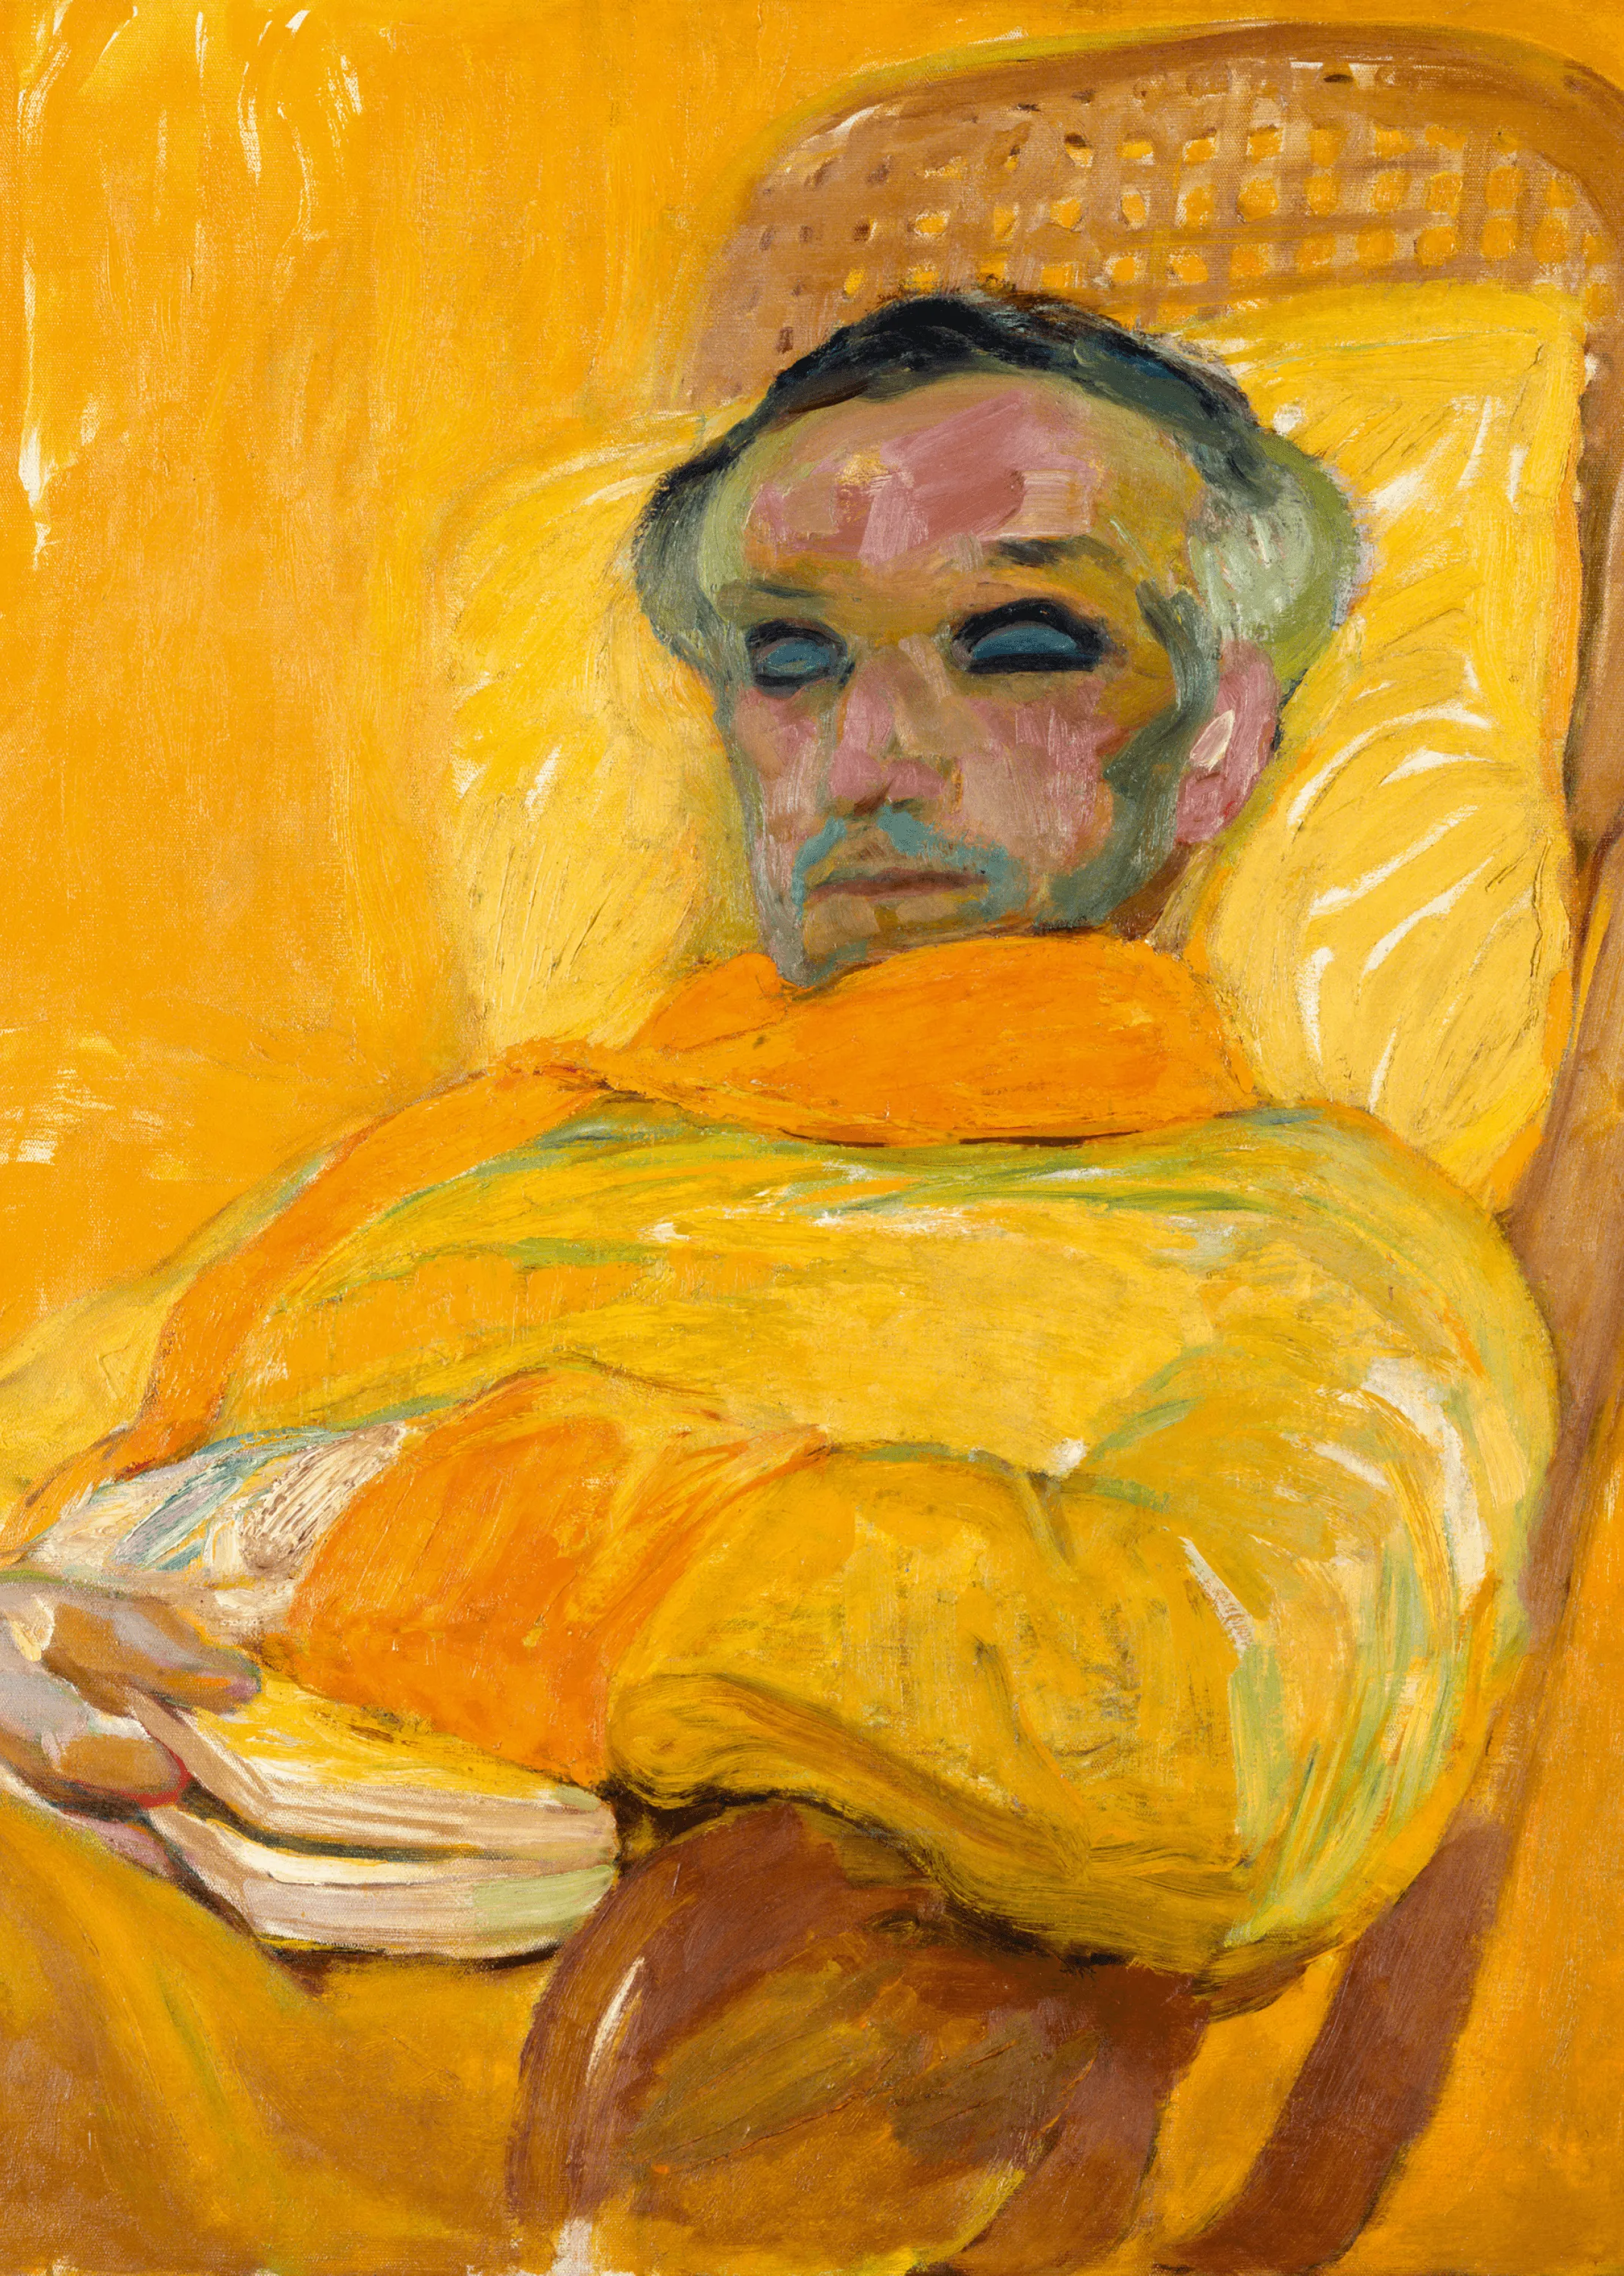 František Kupka, La Gamme jaune,
1907